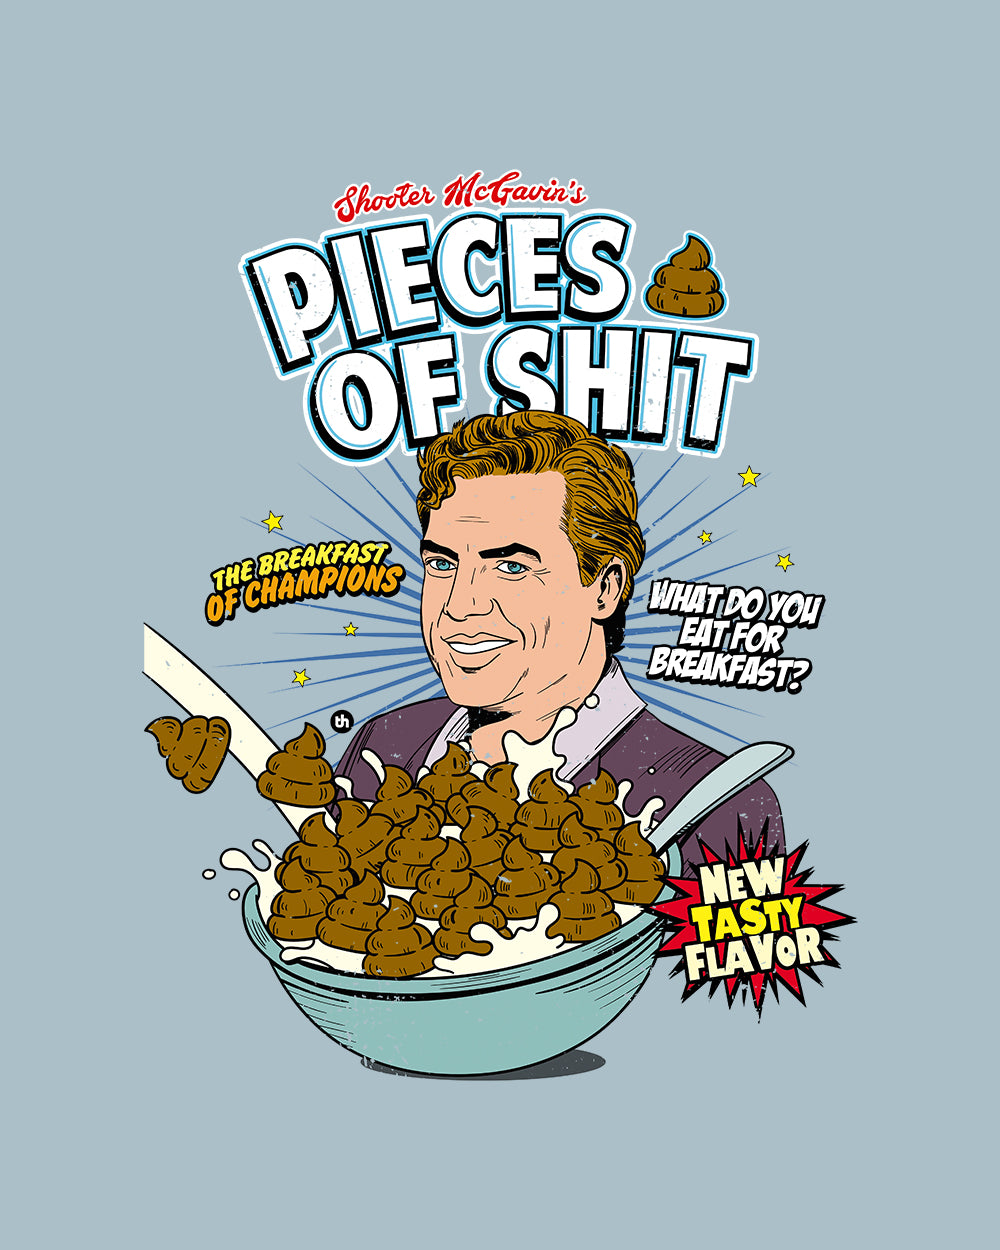 Pieces of Shit Cereal T-Shirt Australia Online #colour_pale blue